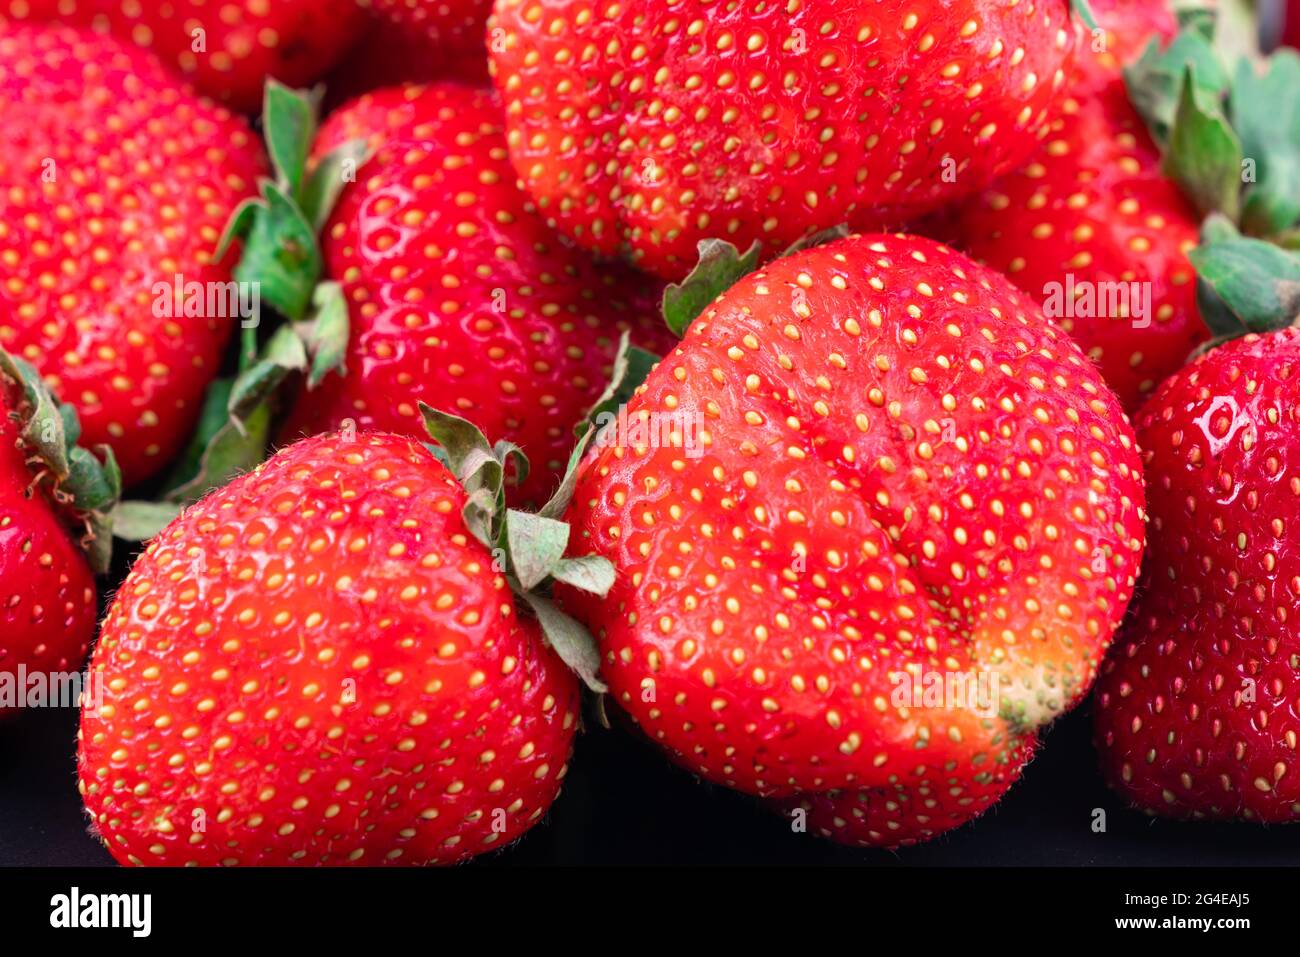 Nahaufnahme von roten reifen Erdbeeren, die die Szene vollständig abdecken Stockfoto